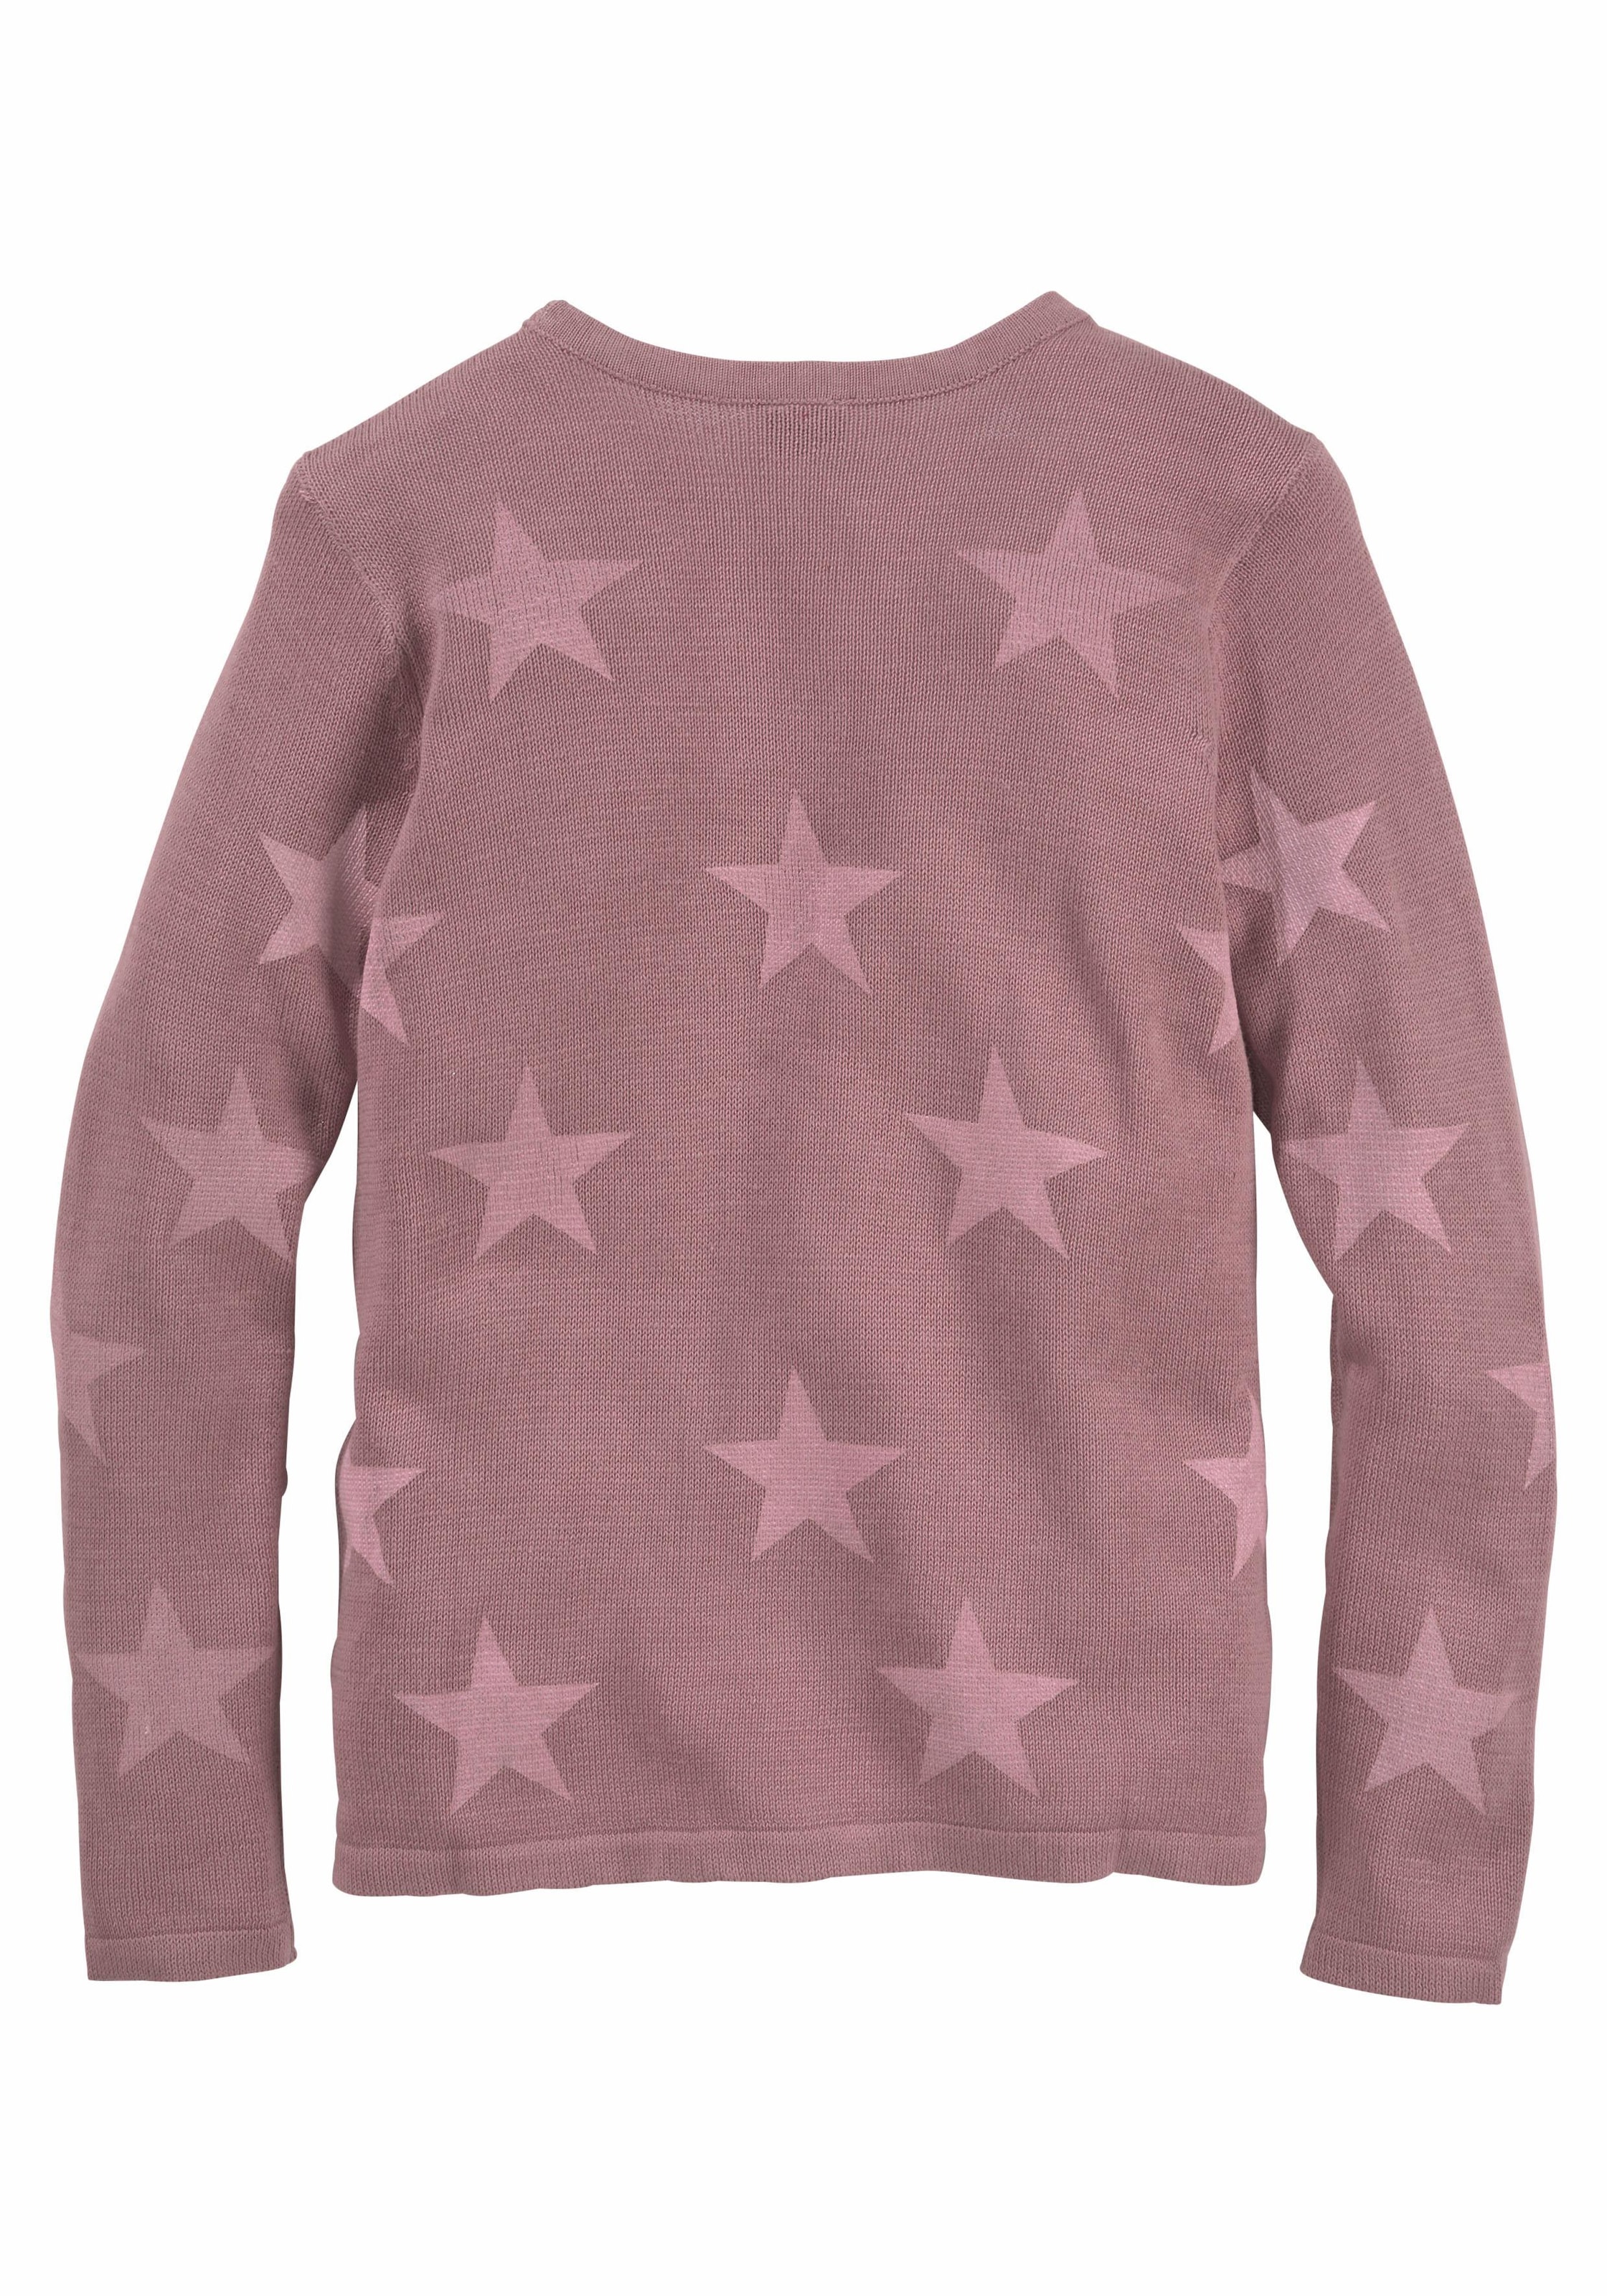 KIDSWORLD Strickpullover »Sterne-Pullover«, mit Sternen - Druck